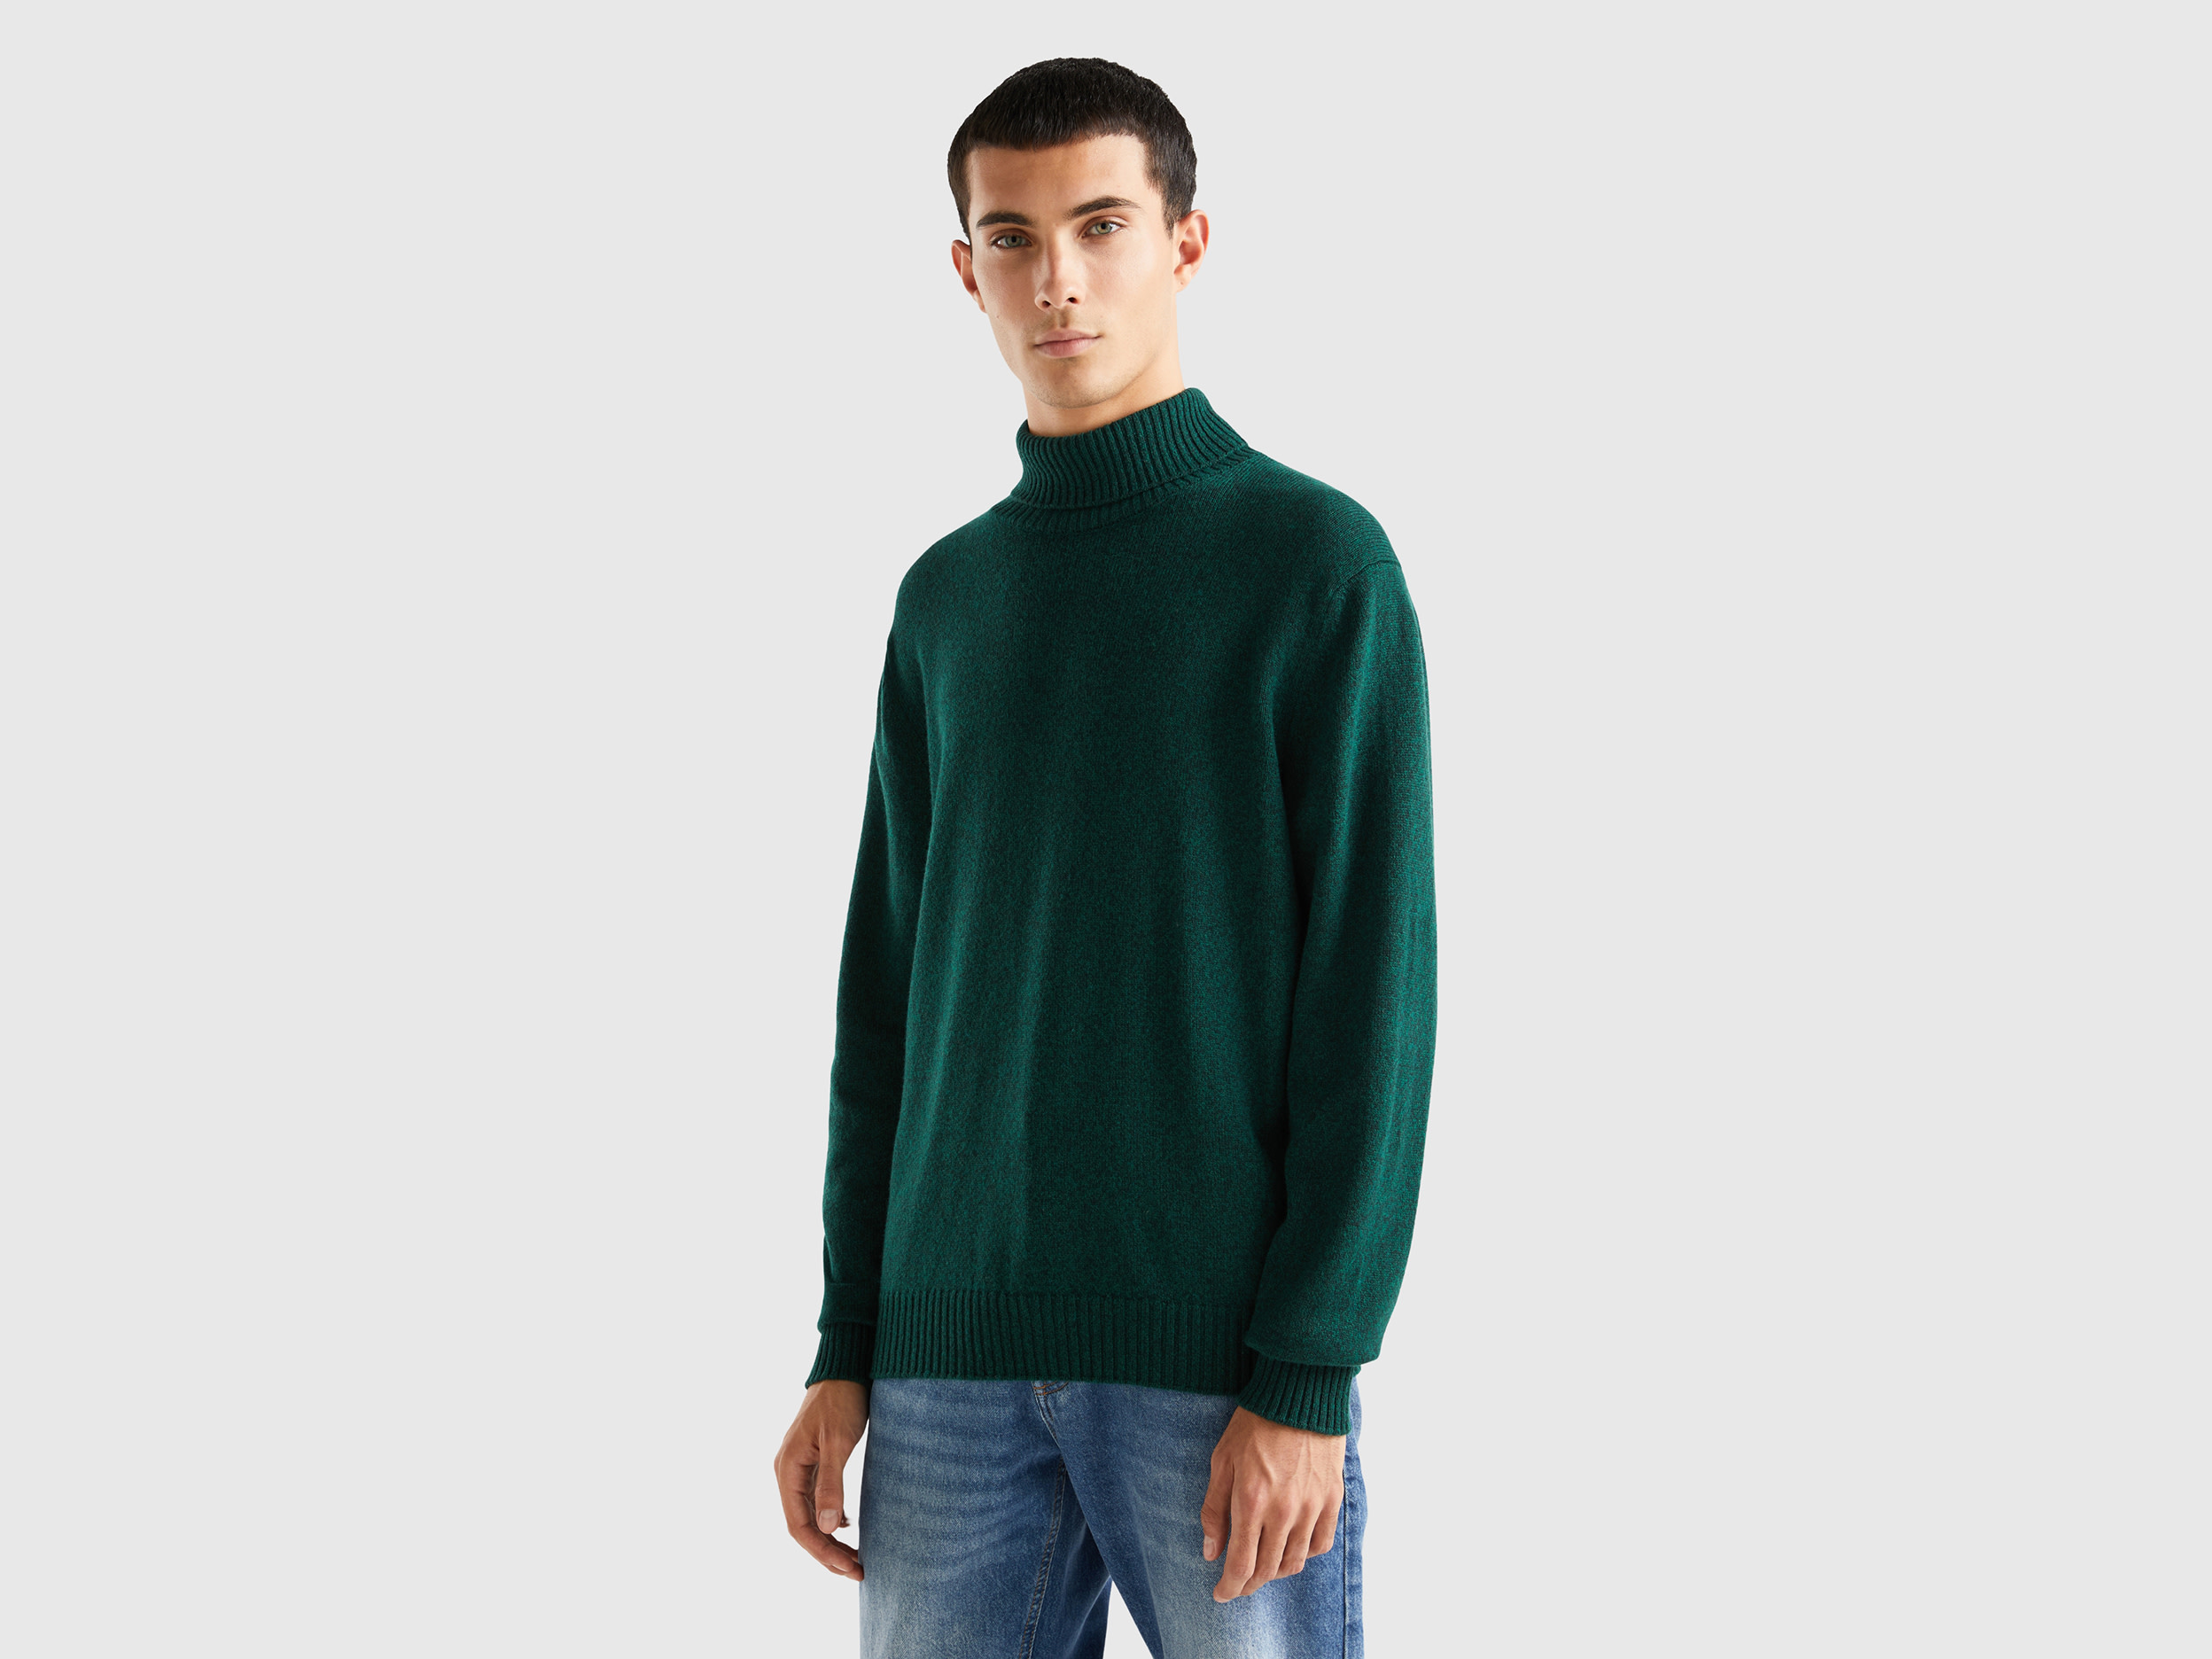 Benetton, Turtleneck Sweater In Cashmere And Wool Blend, size XXL, Dark Green, Men